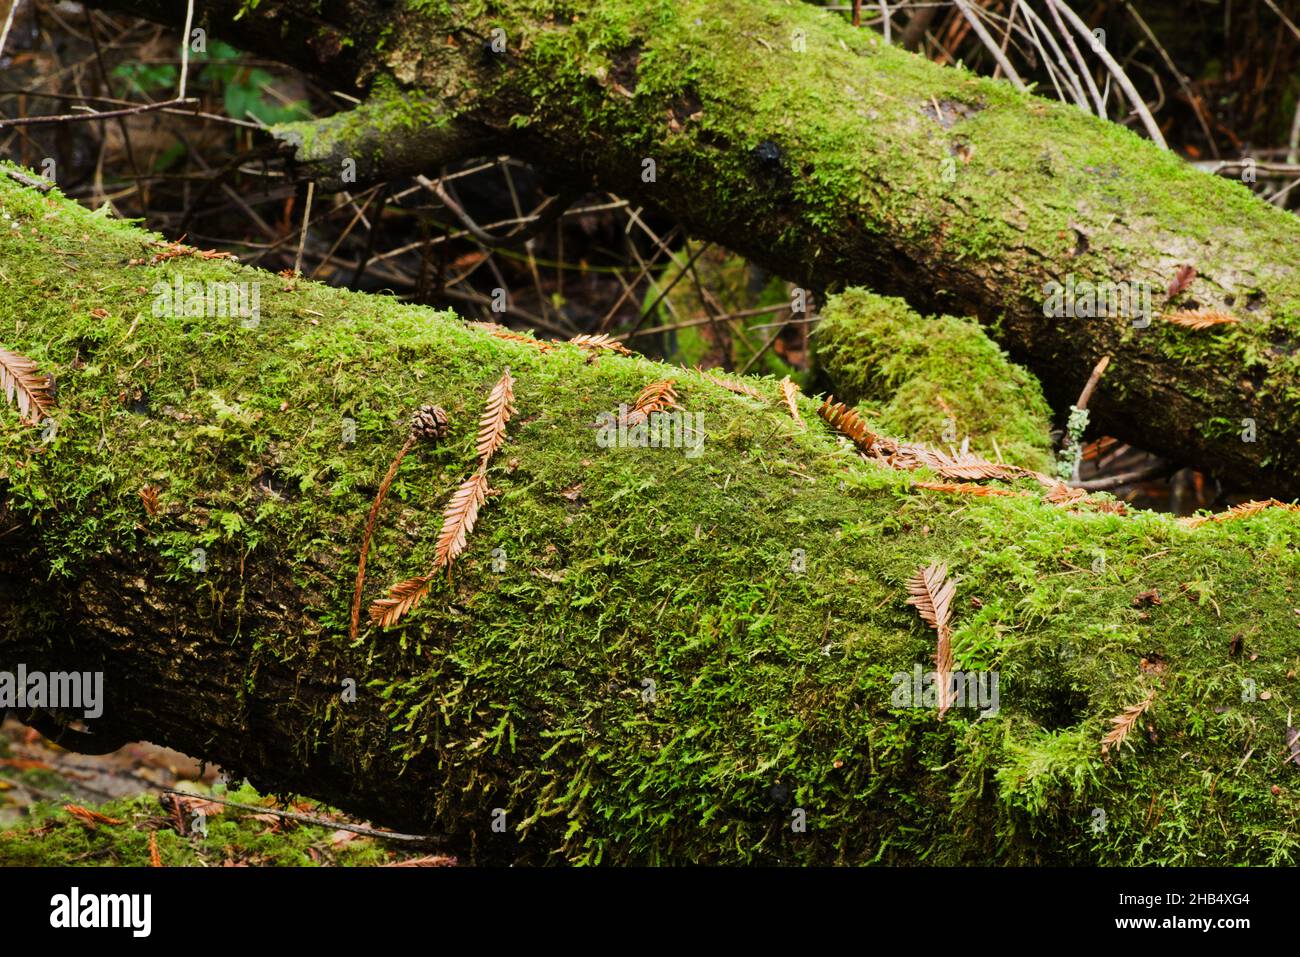 Gros plan de 2 arbres tombés couverts de mousse, avec motifs et lignes aléatoires, forme et texture.Parle de vert et de terre maternelle Banque D'Images